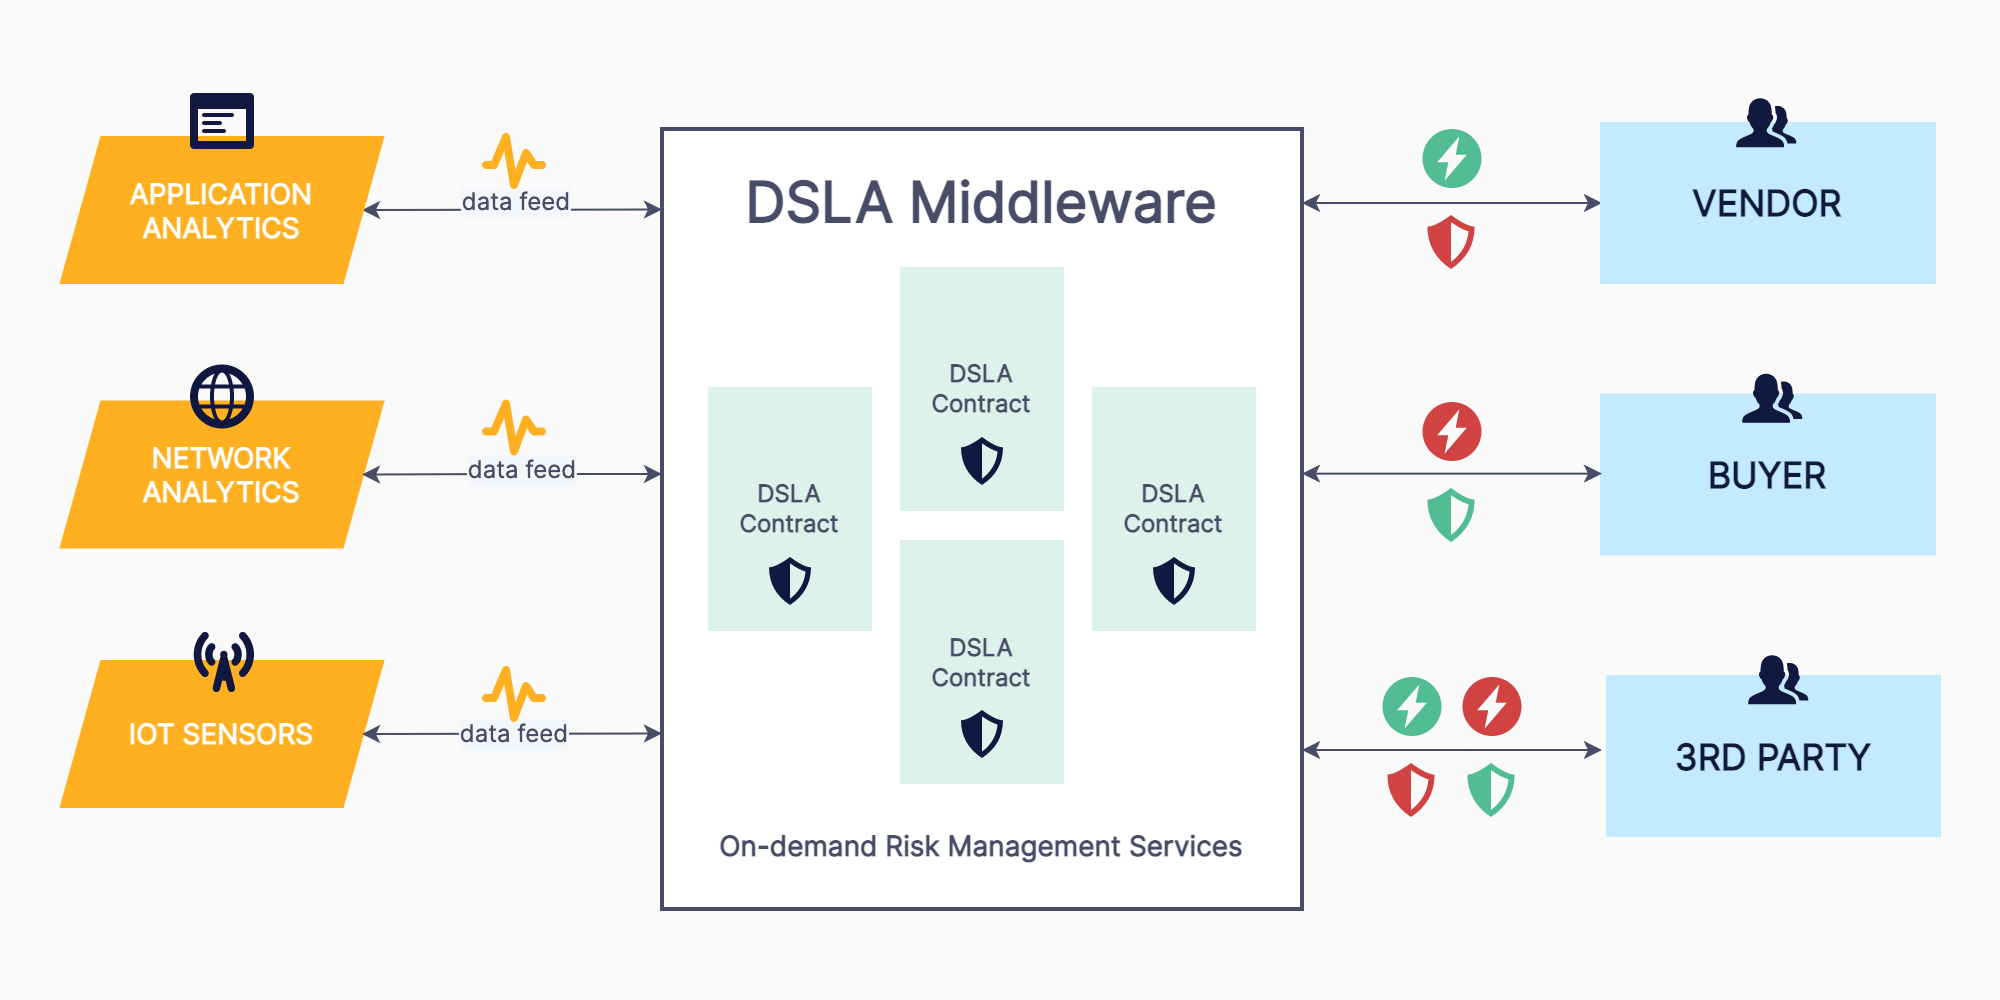 DSLA Middleware